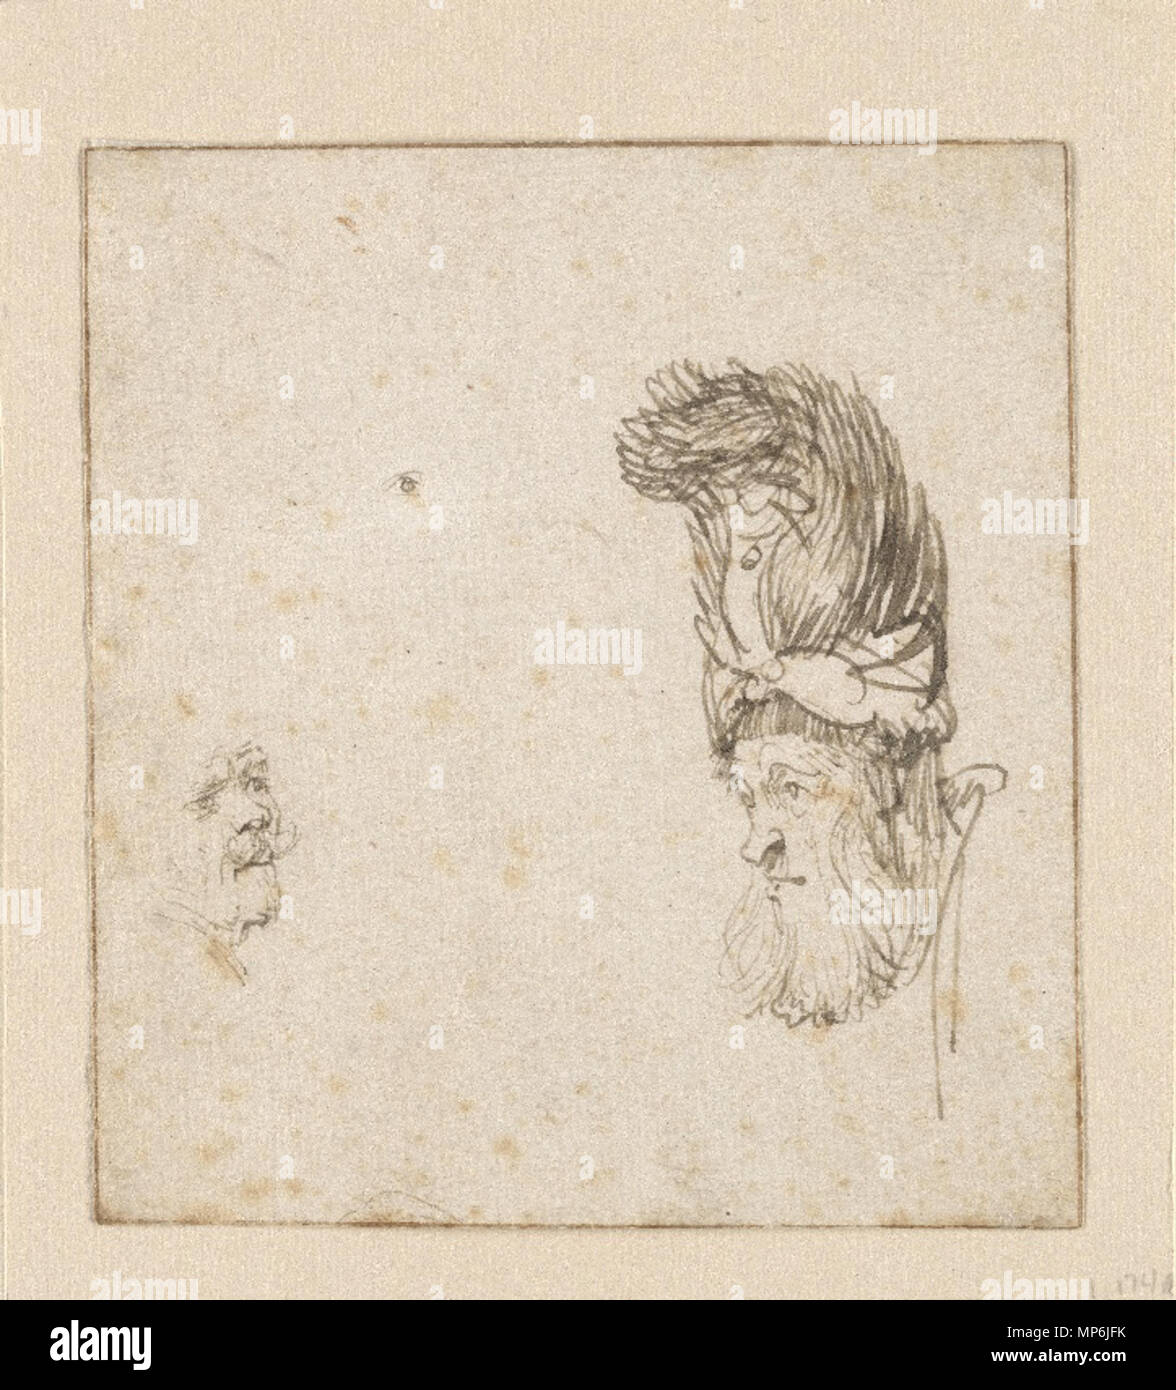 Vieil Homme barbu dans un haut bonnet de fourrure ; Auto-portrait entre vers 1634 et vers 1635. Rembrandt 1052 Vieil Homme barbu dans un haut bonnet de fourrure Banque D'Images